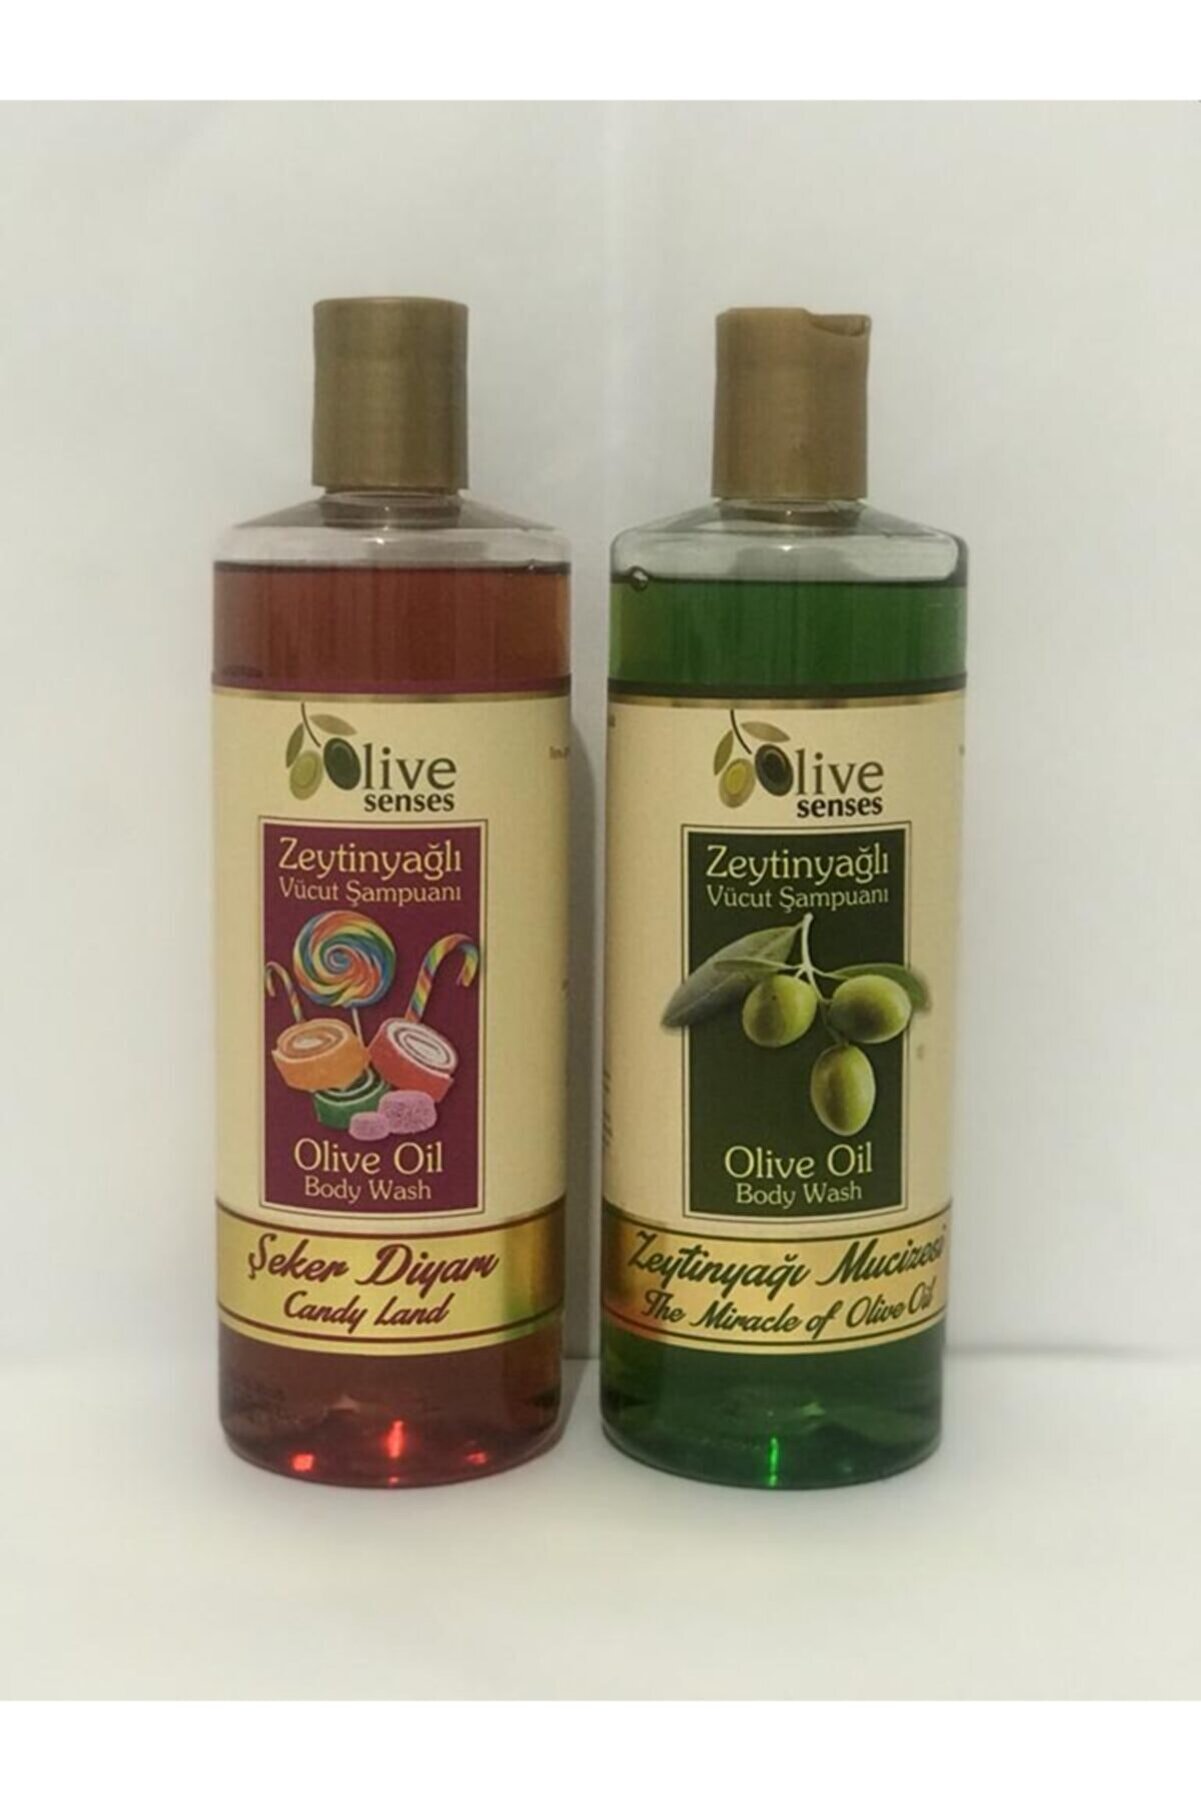 Oilive Olive Senses Zeytinyağlı Vücut Şampuanı Şeker Diyarı Alana Zeytinyağı Mucizesi Vücut Şampuanı Hediye